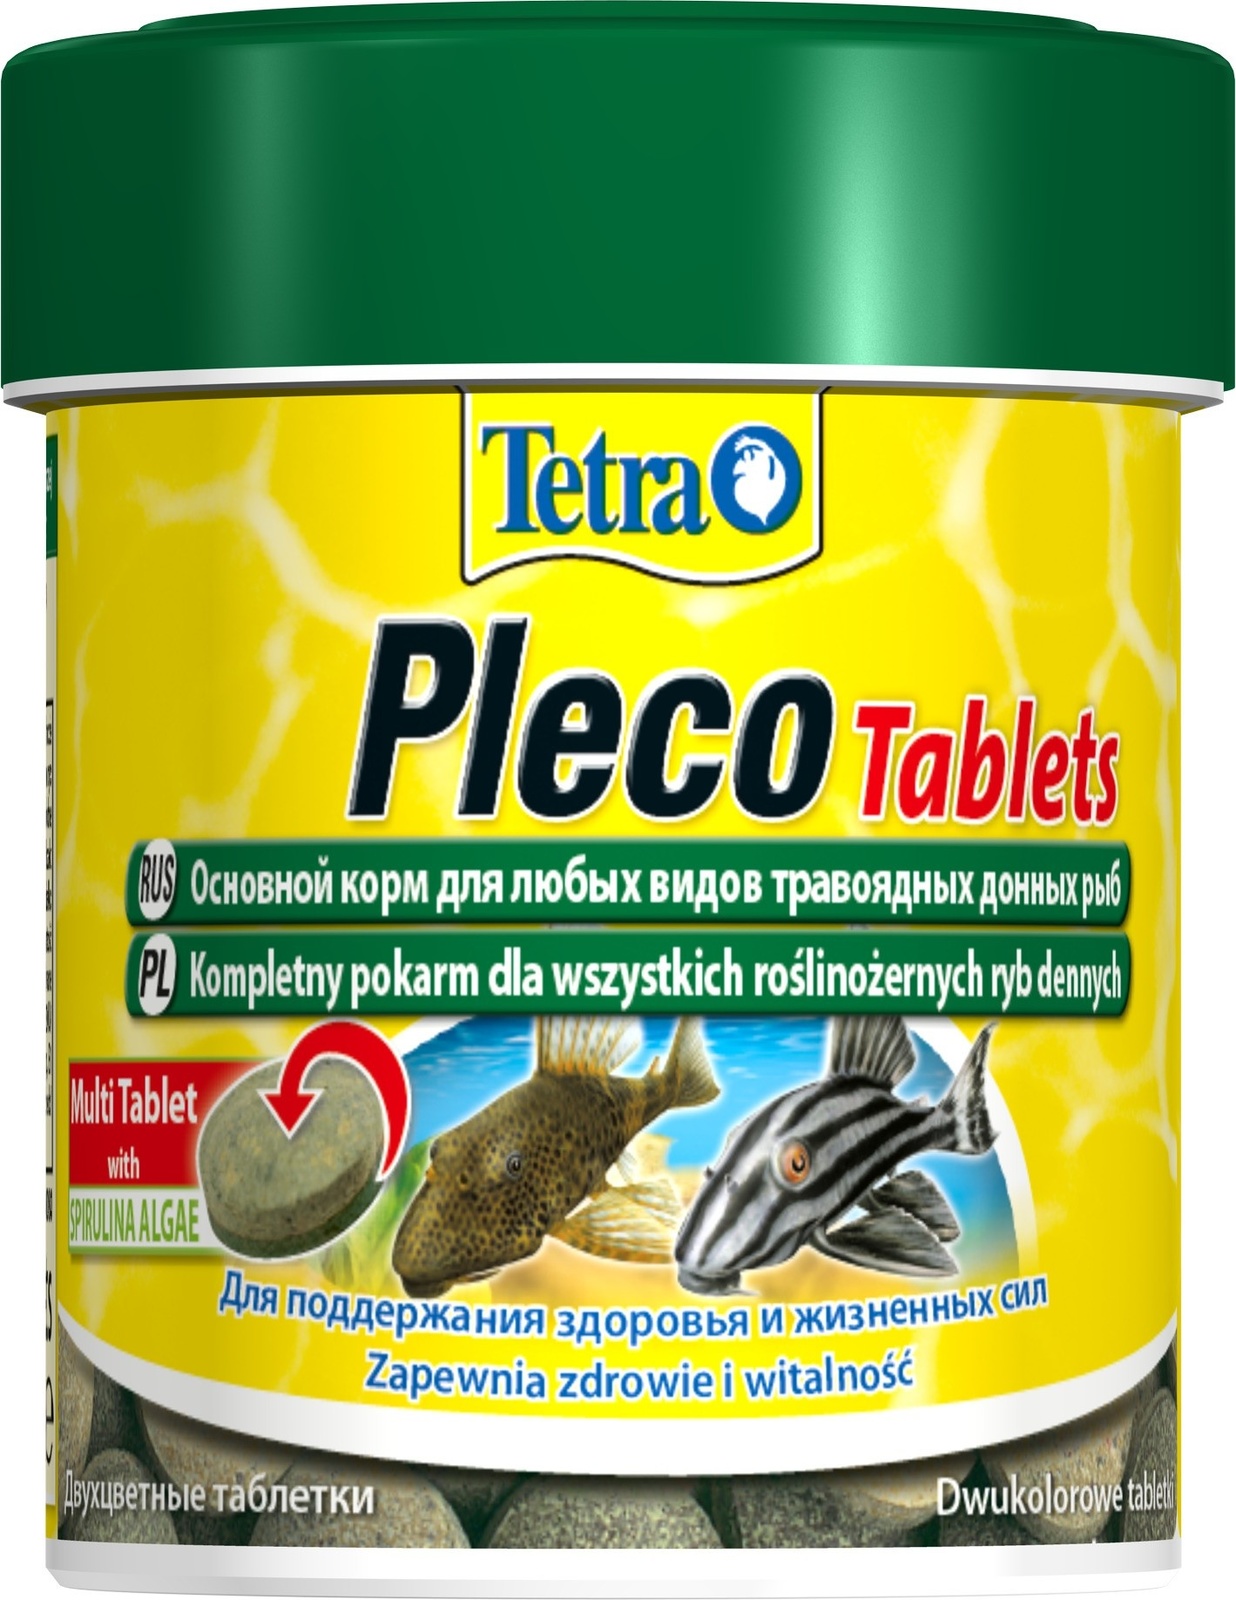 Tetra (корма) Tetra (корма) корм для травоядных донных рыб Pleco Tablets 120 табл. (36 г) tetra корма tetra корма корм для травоядных донных рыб пластинки с цукини 15 г